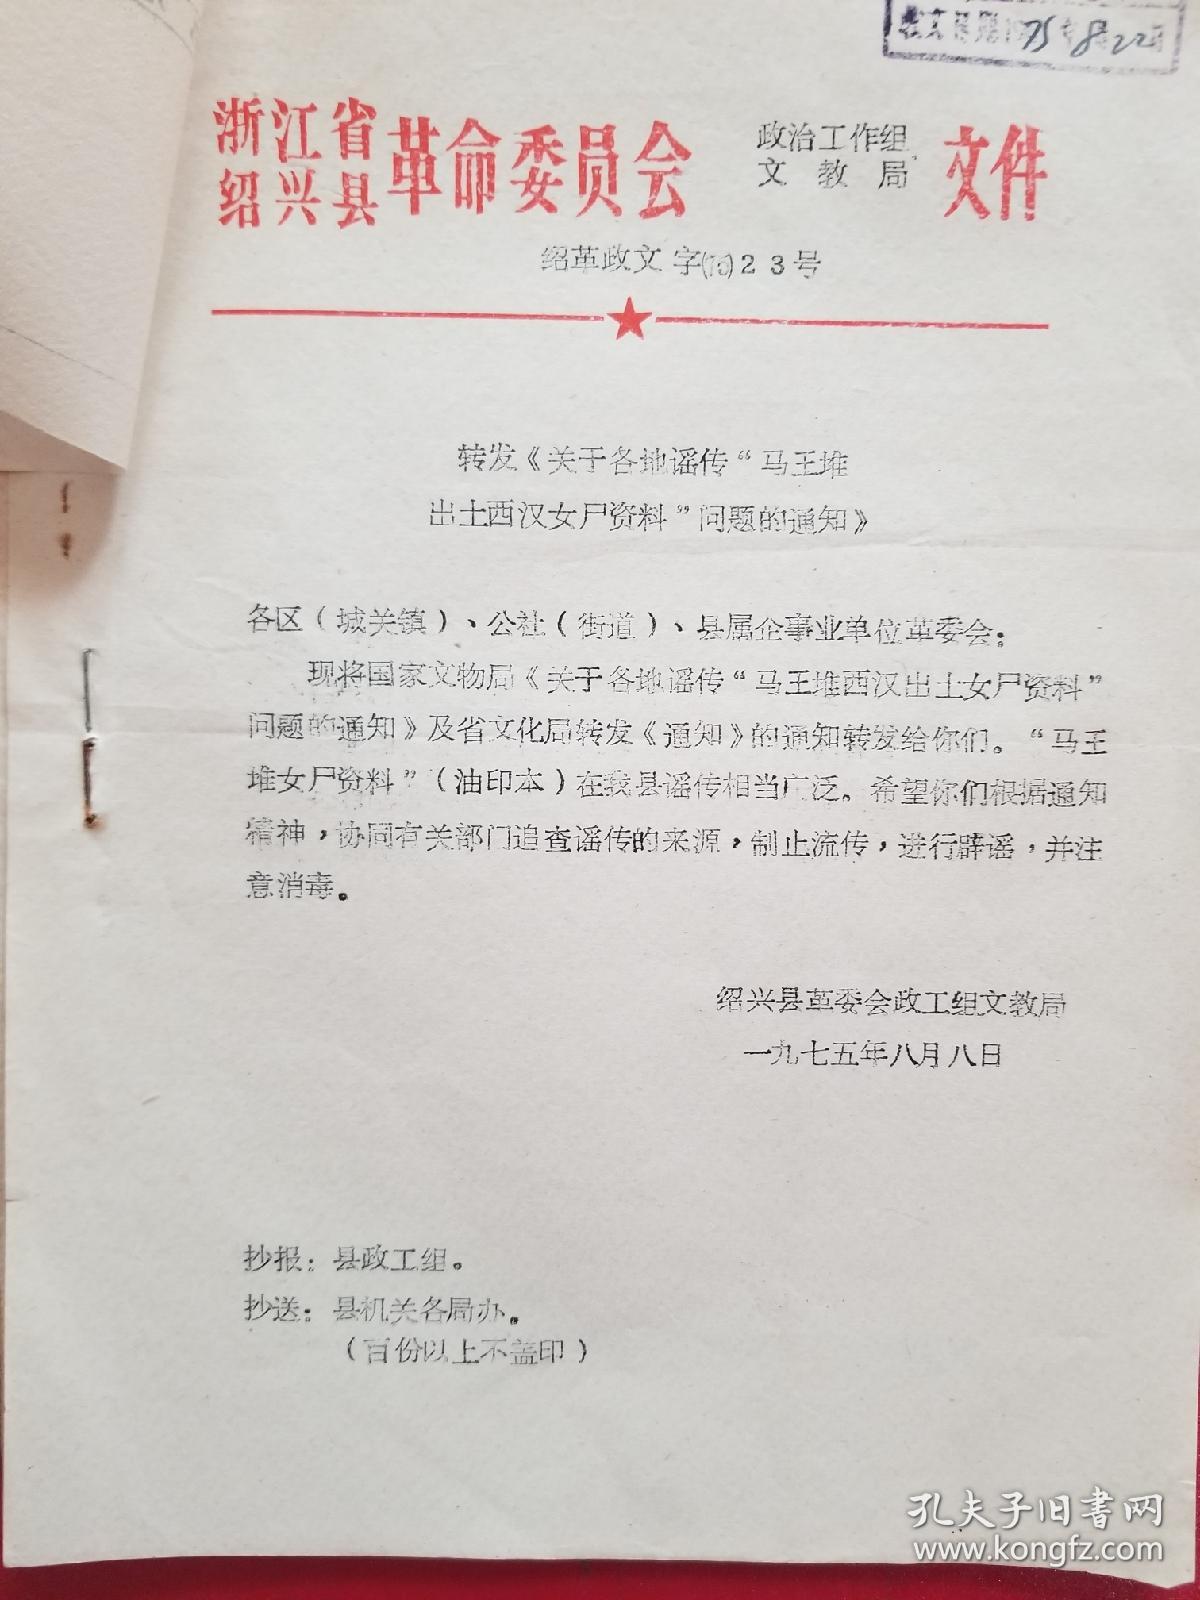 1975年绍兴县转发关于各地谣传马王堆出*西汉女尸资料问题的通知（1份）